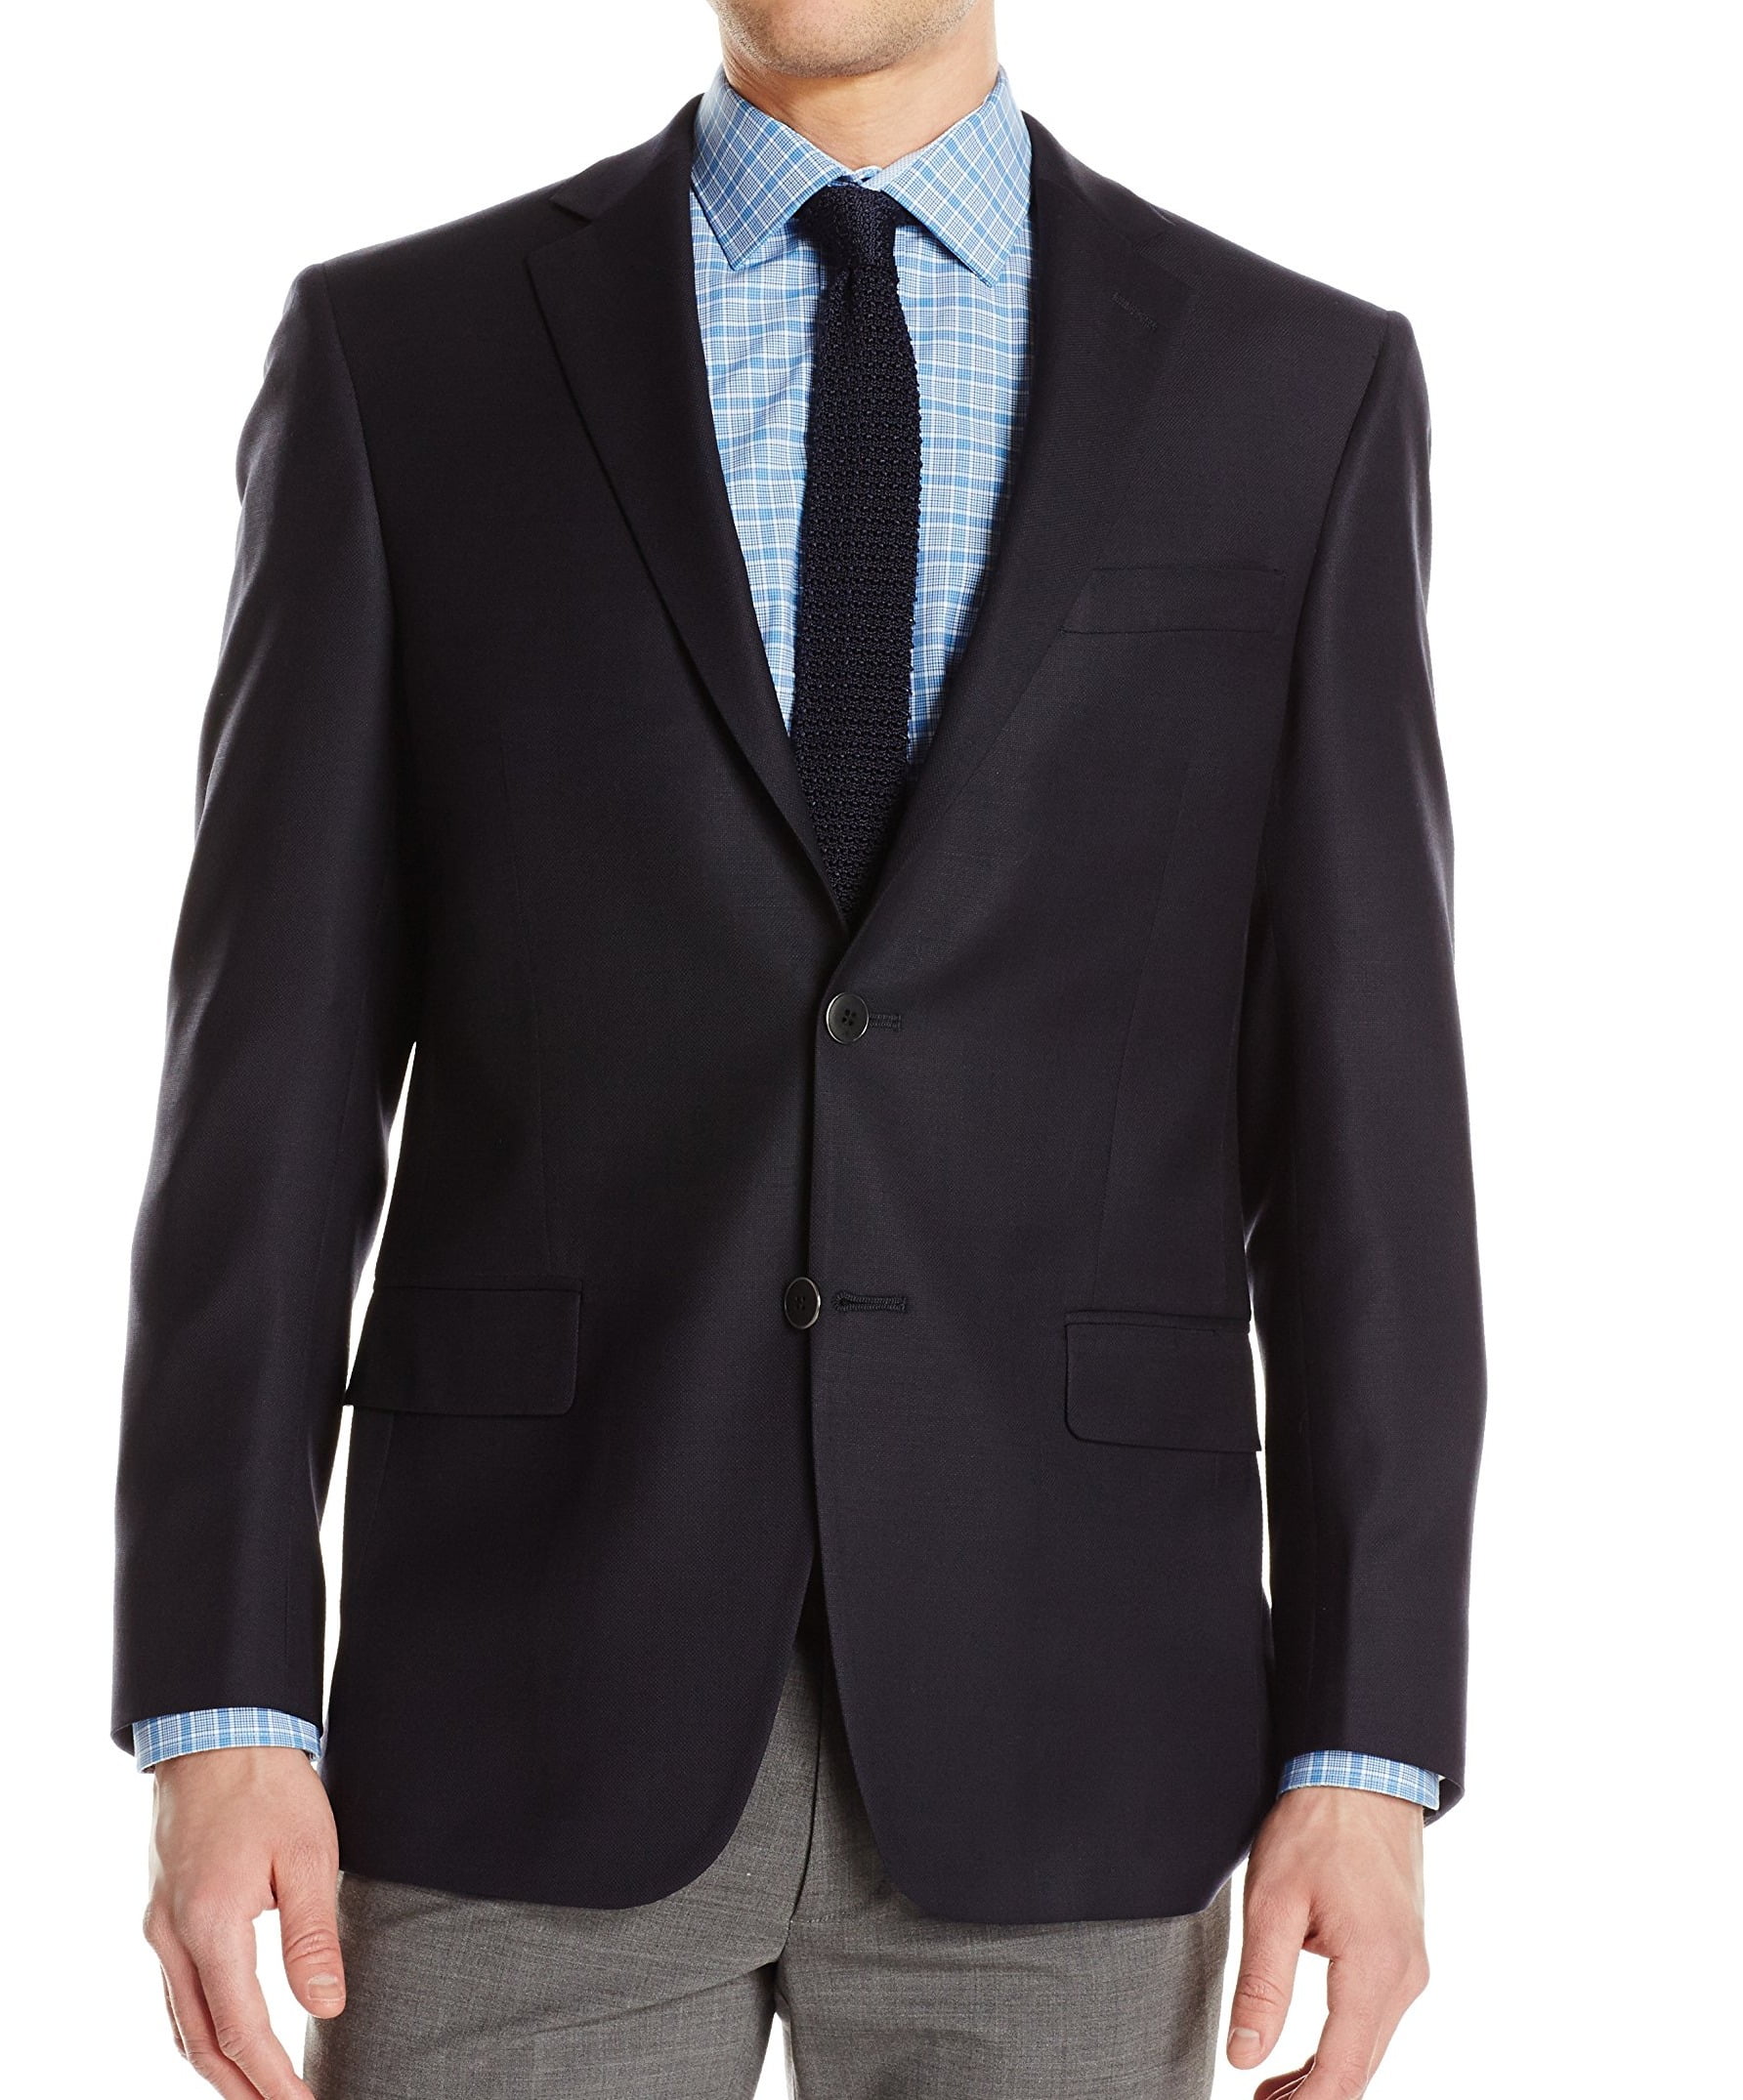 Hart Schaffner Marx - Mens Suit Jacket Navy Wool Side Vent 50 - Walmart ...